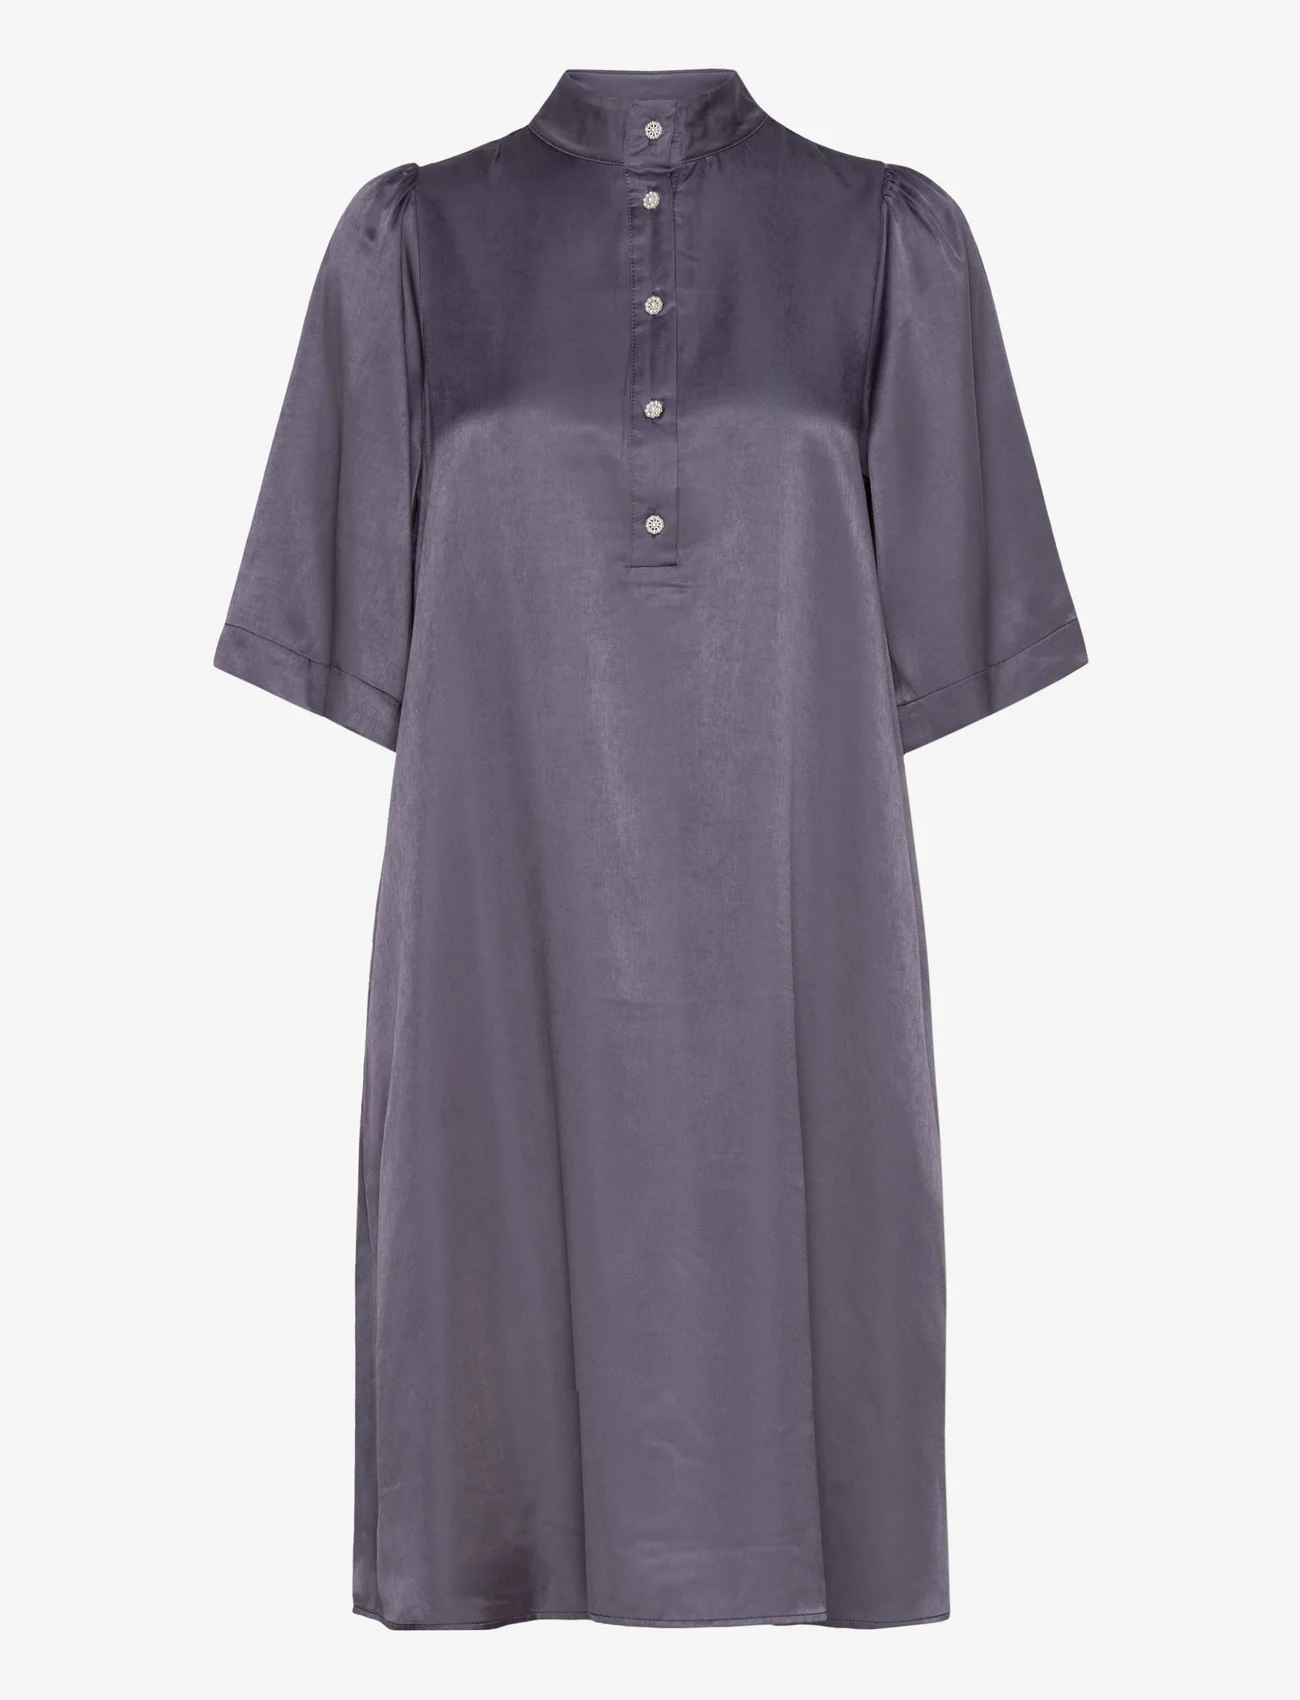 My Essential Wardrobe - EstelleMW Dress - overhemdjurken - graystone - 0